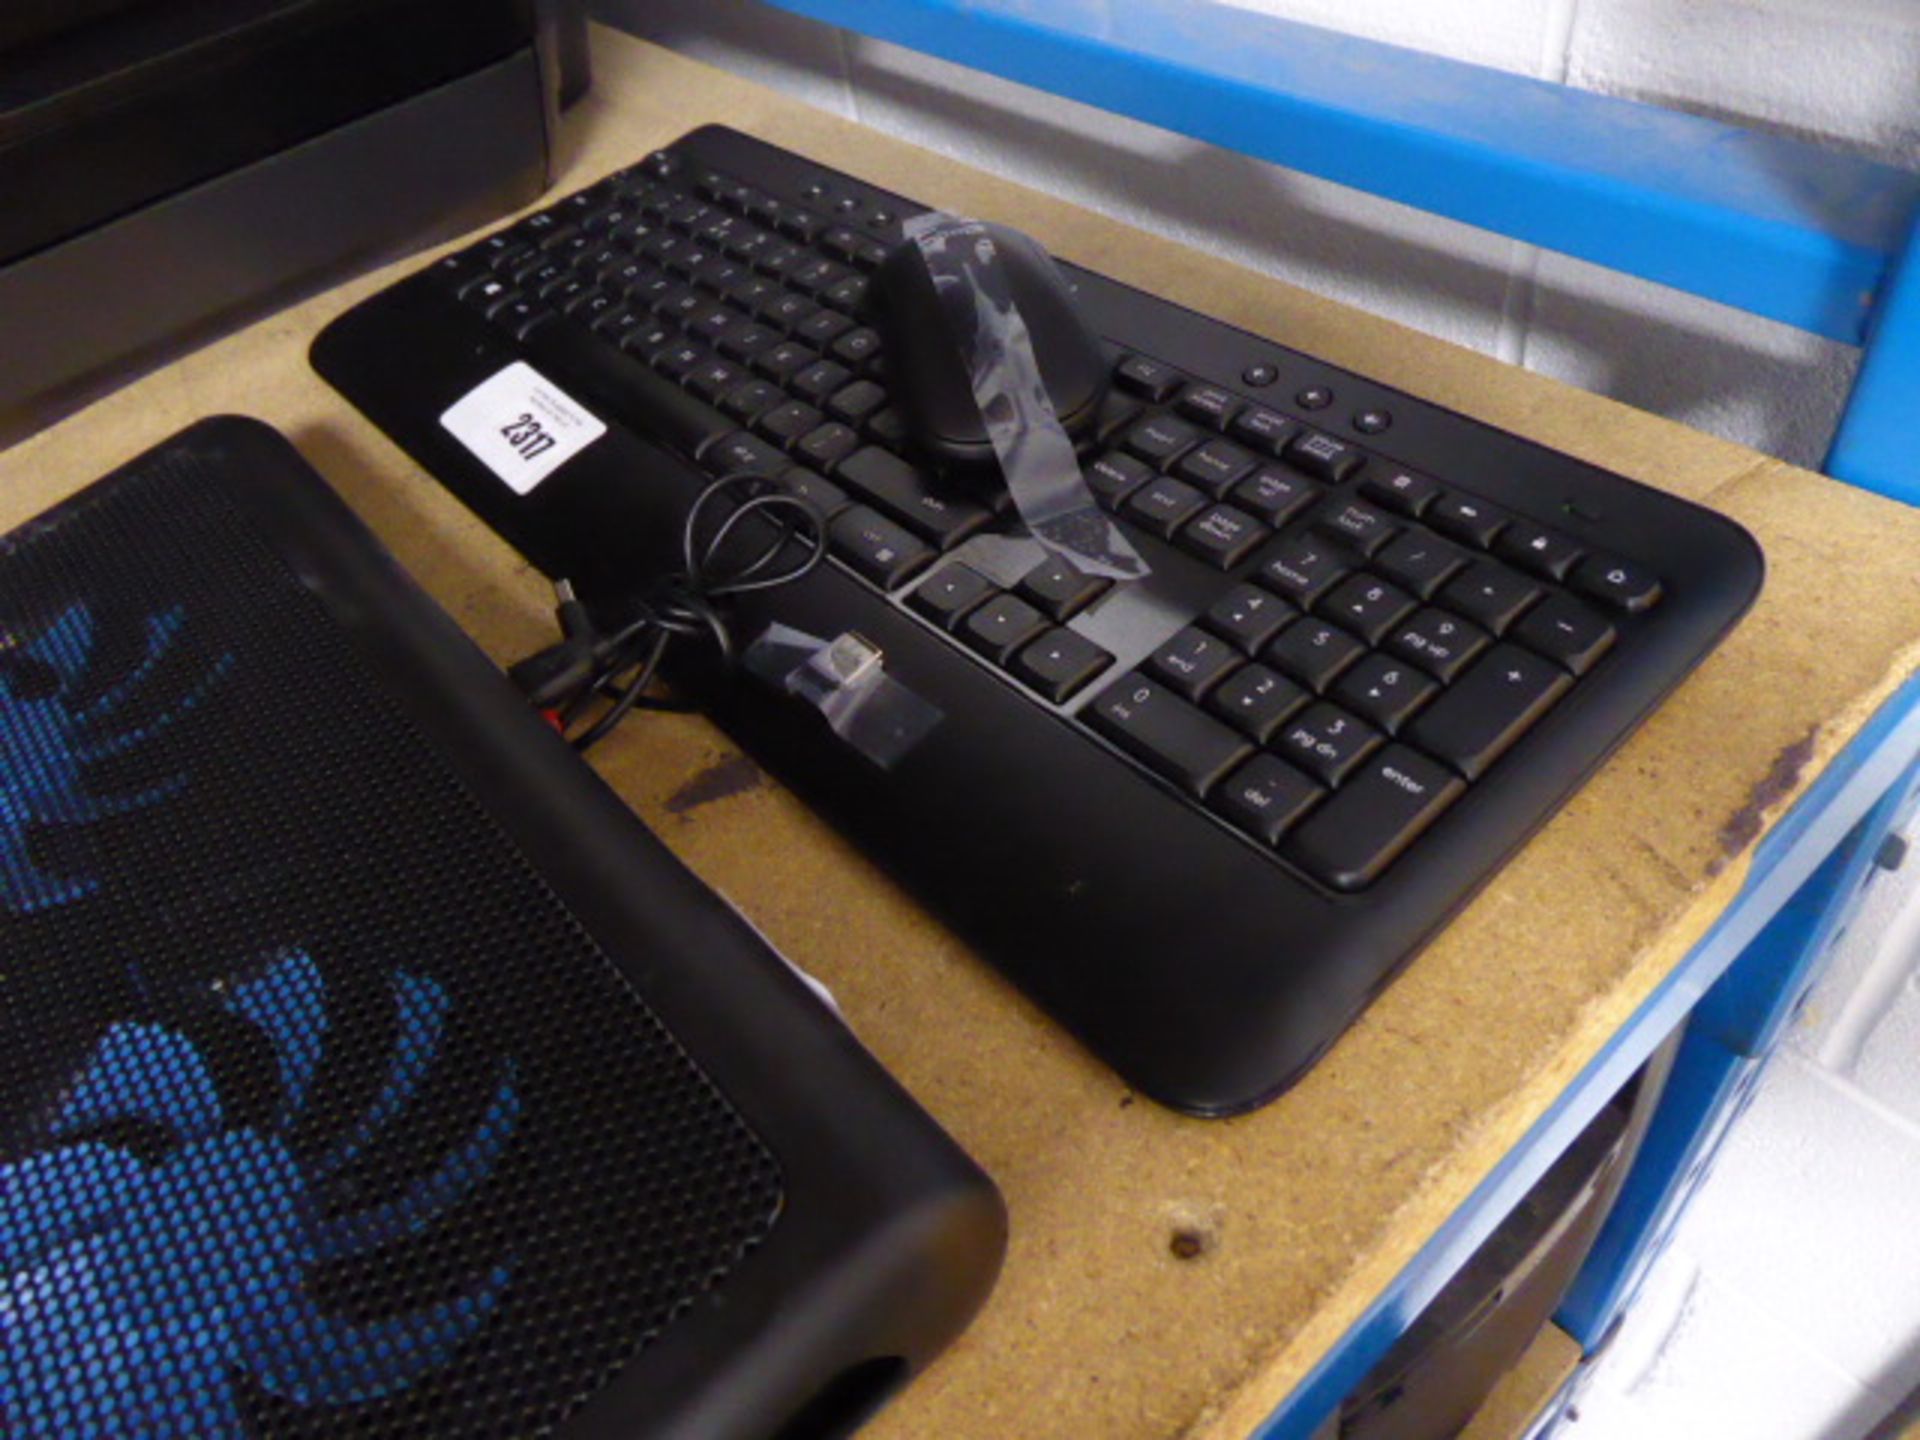 2295 - Logitech wireless keyboard and mouse set